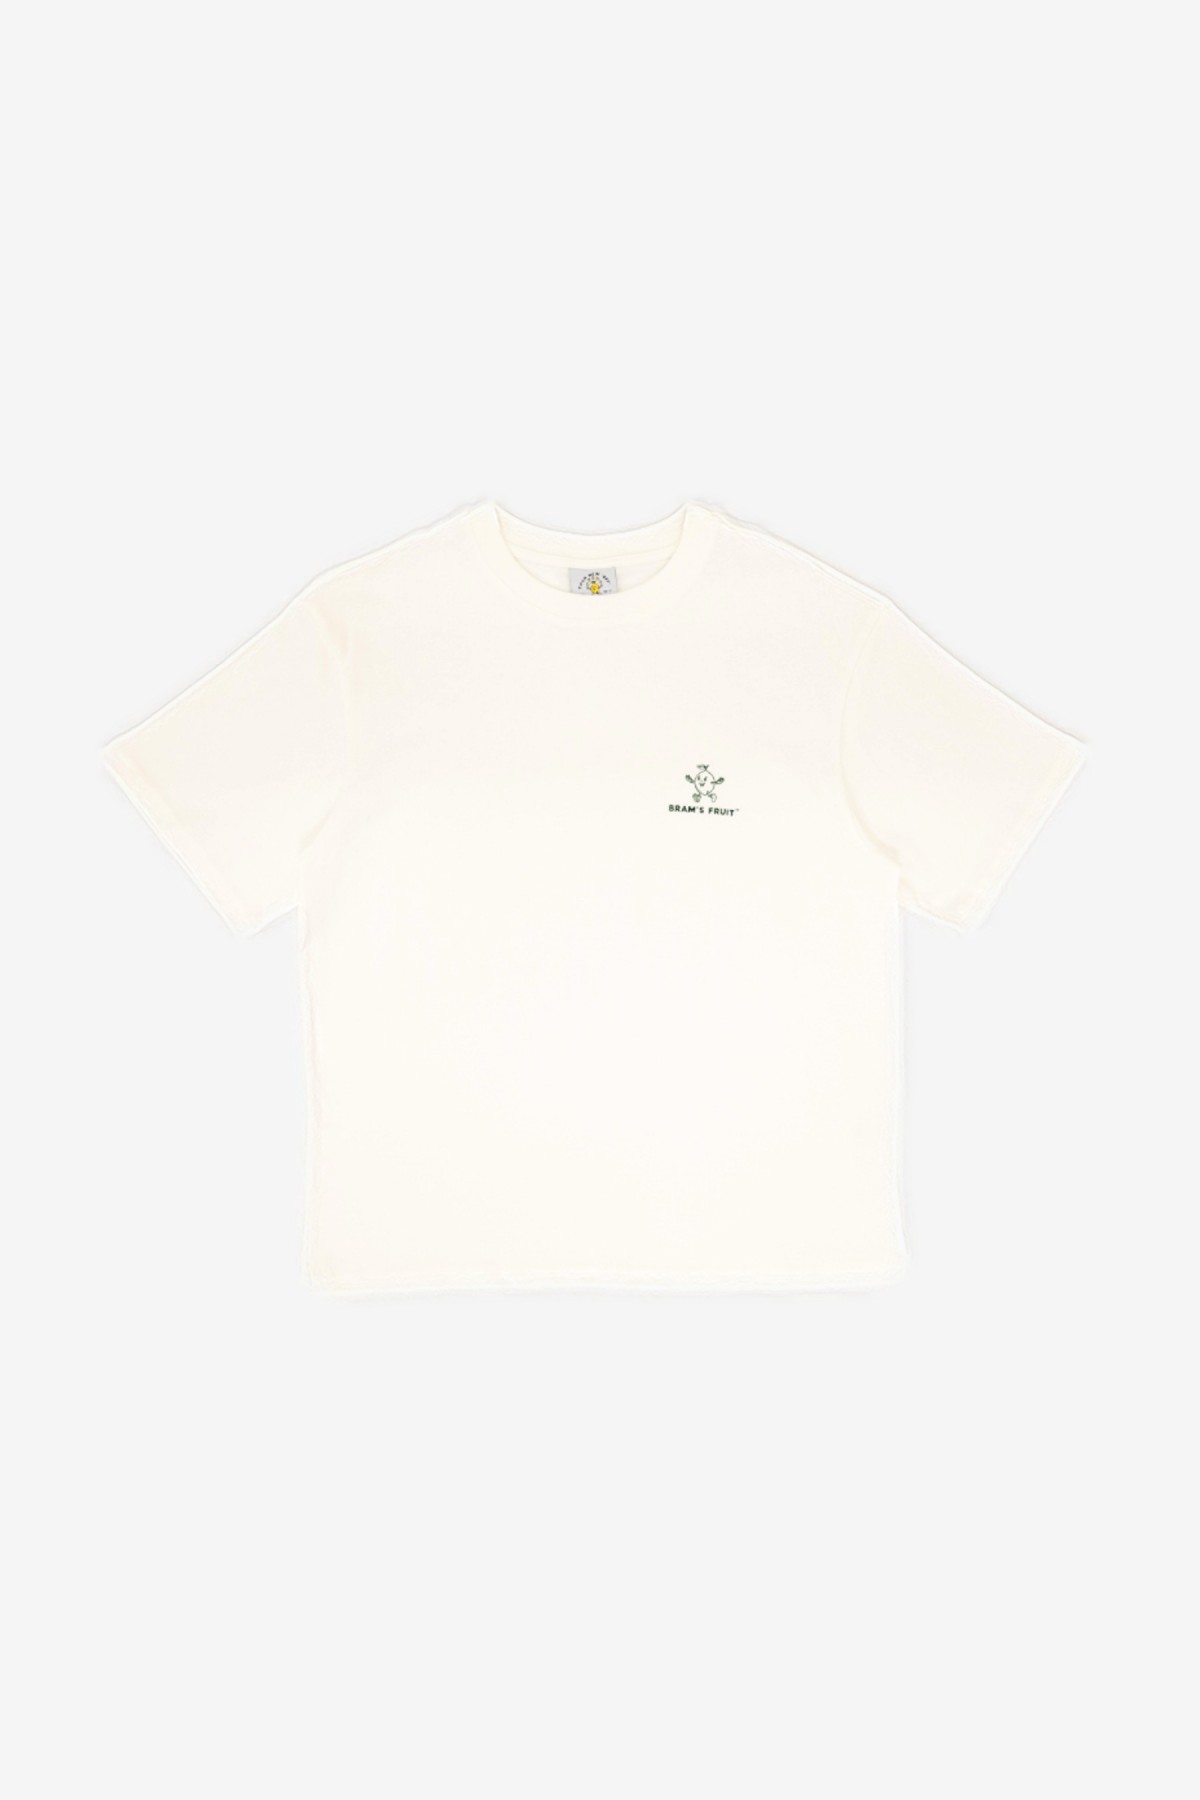 Bram's Fruit Outline Lemon T-Shirt in White